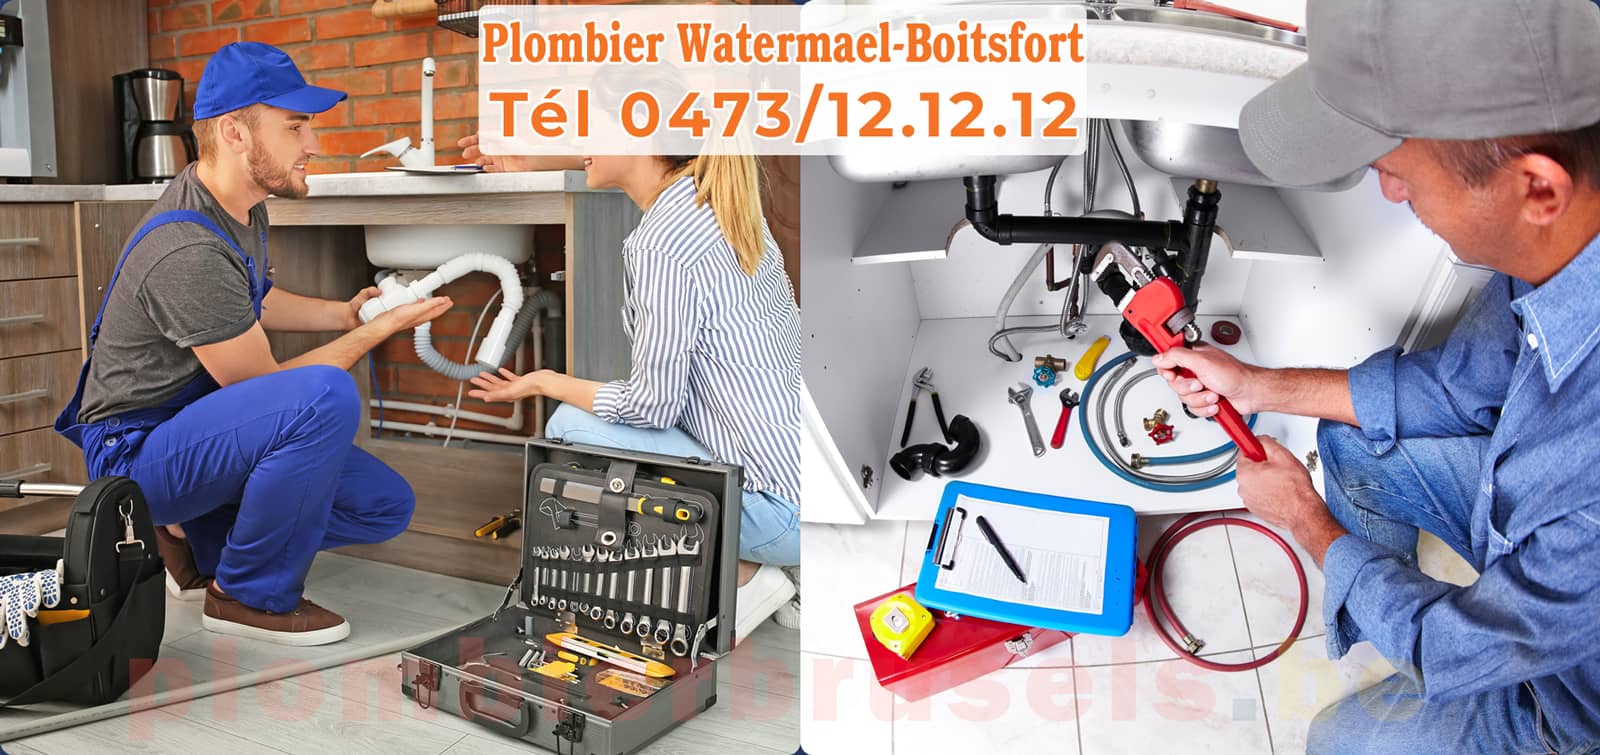 Plombier Watermael-Boitsfort service de Plomberie tél 0473/12.12.12